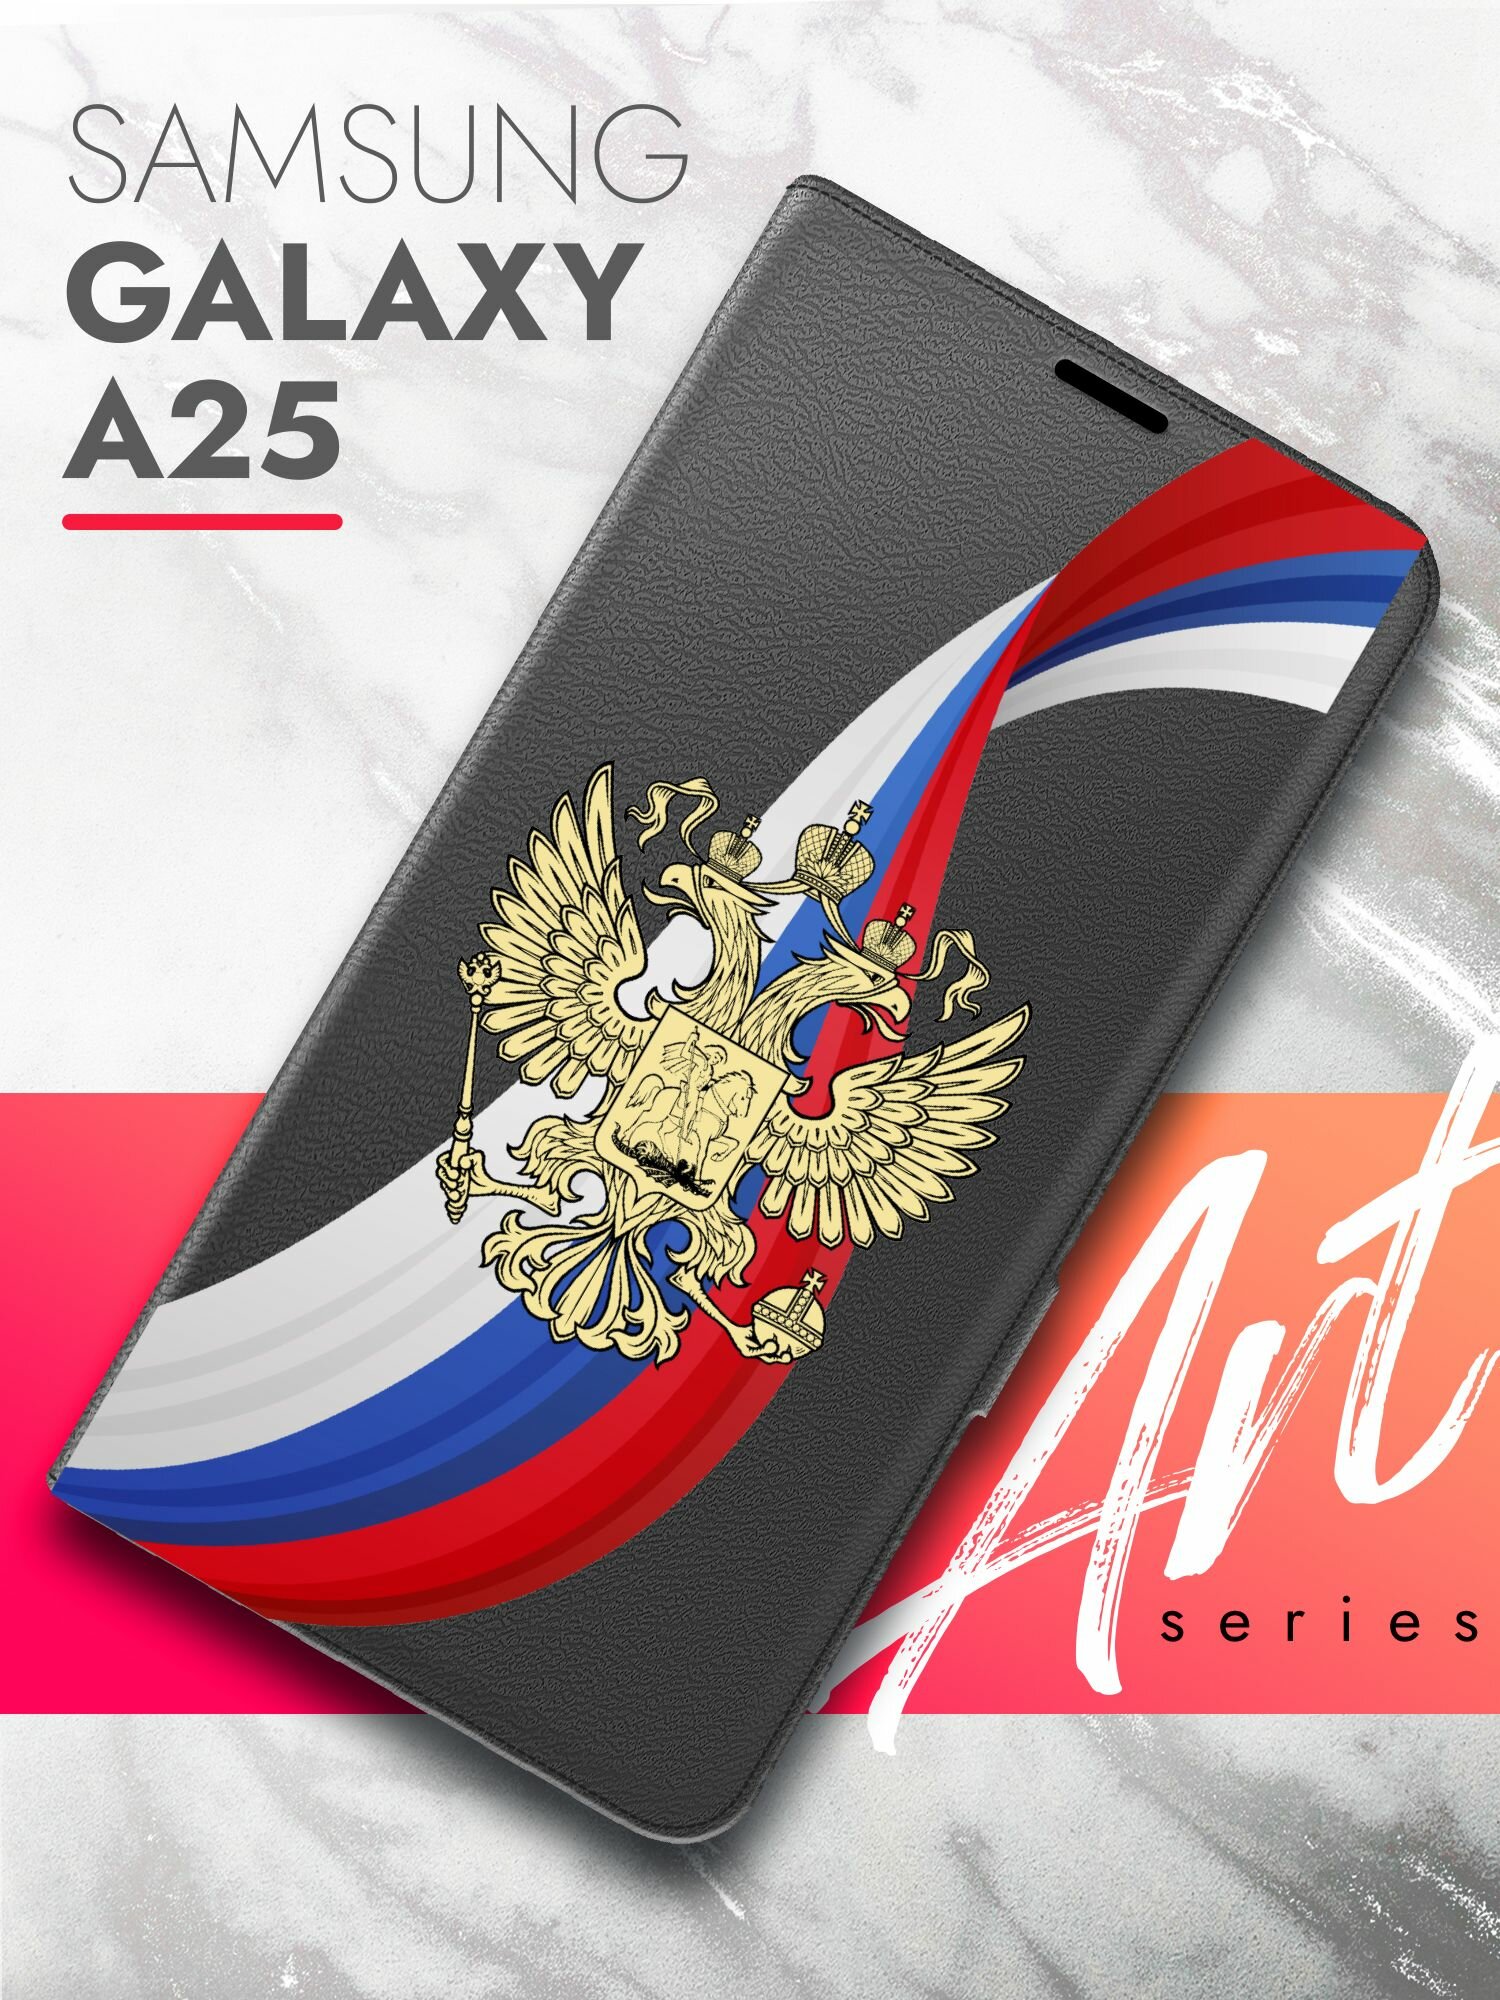 Чехол на Samsung Galaxy A25 (Самсунг Галакси А25) черный книжка экокожа подставка отделение для карт магнит Book case, Brozo (принт) Россия Флаг-Лента